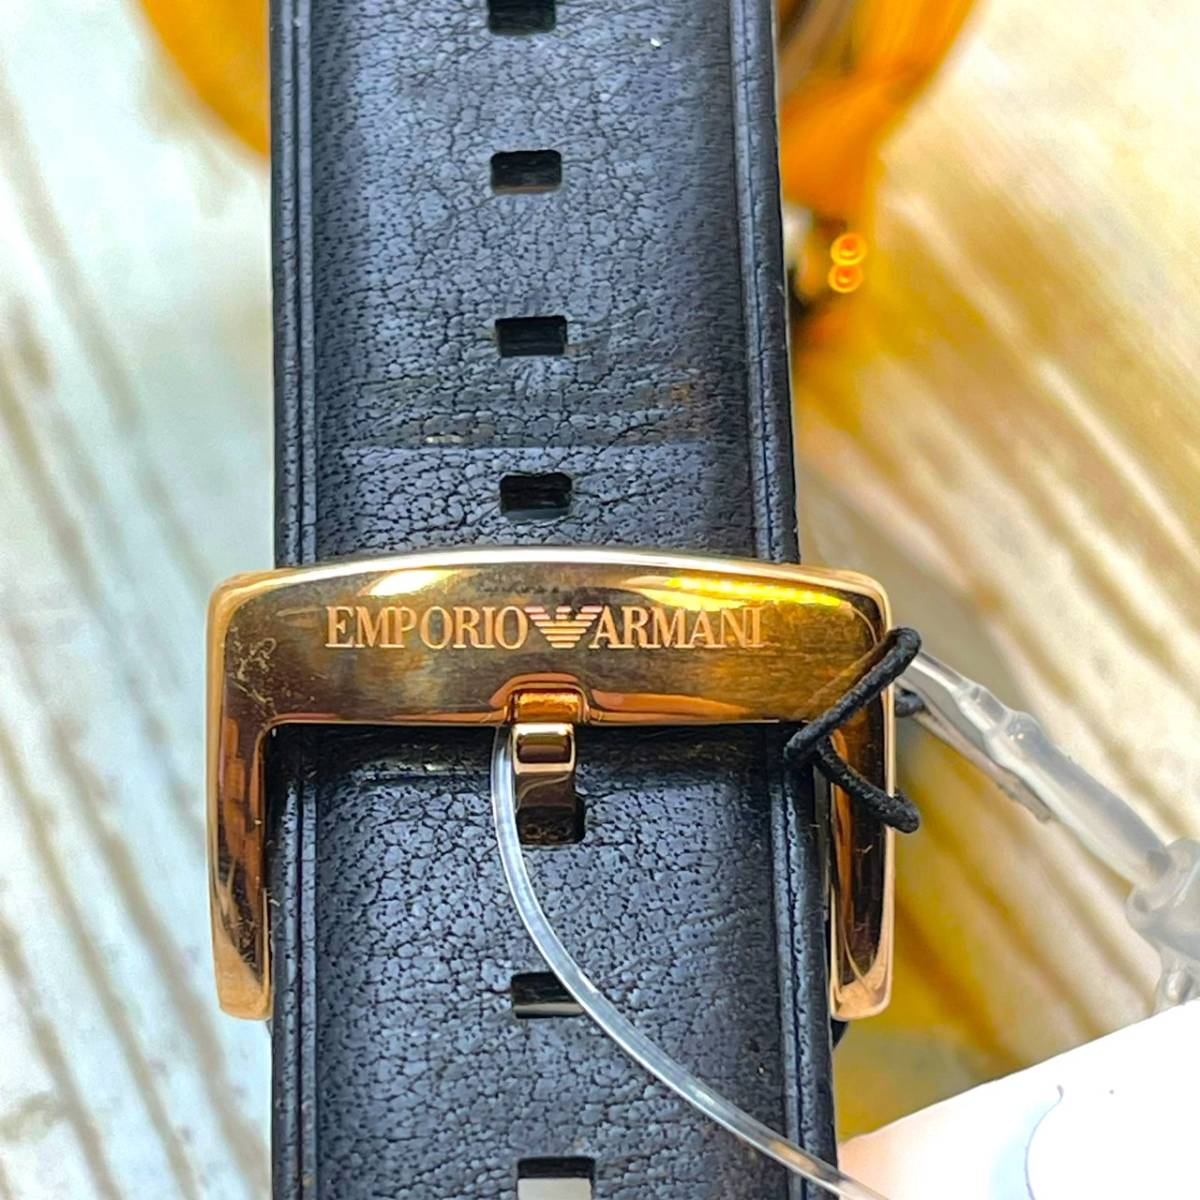  новый товар *EMPORIO ARMANI Emporio Armani наручные часы AR60013* автоматический самозаводящиеся часы механический аналог розовое золото кожа 